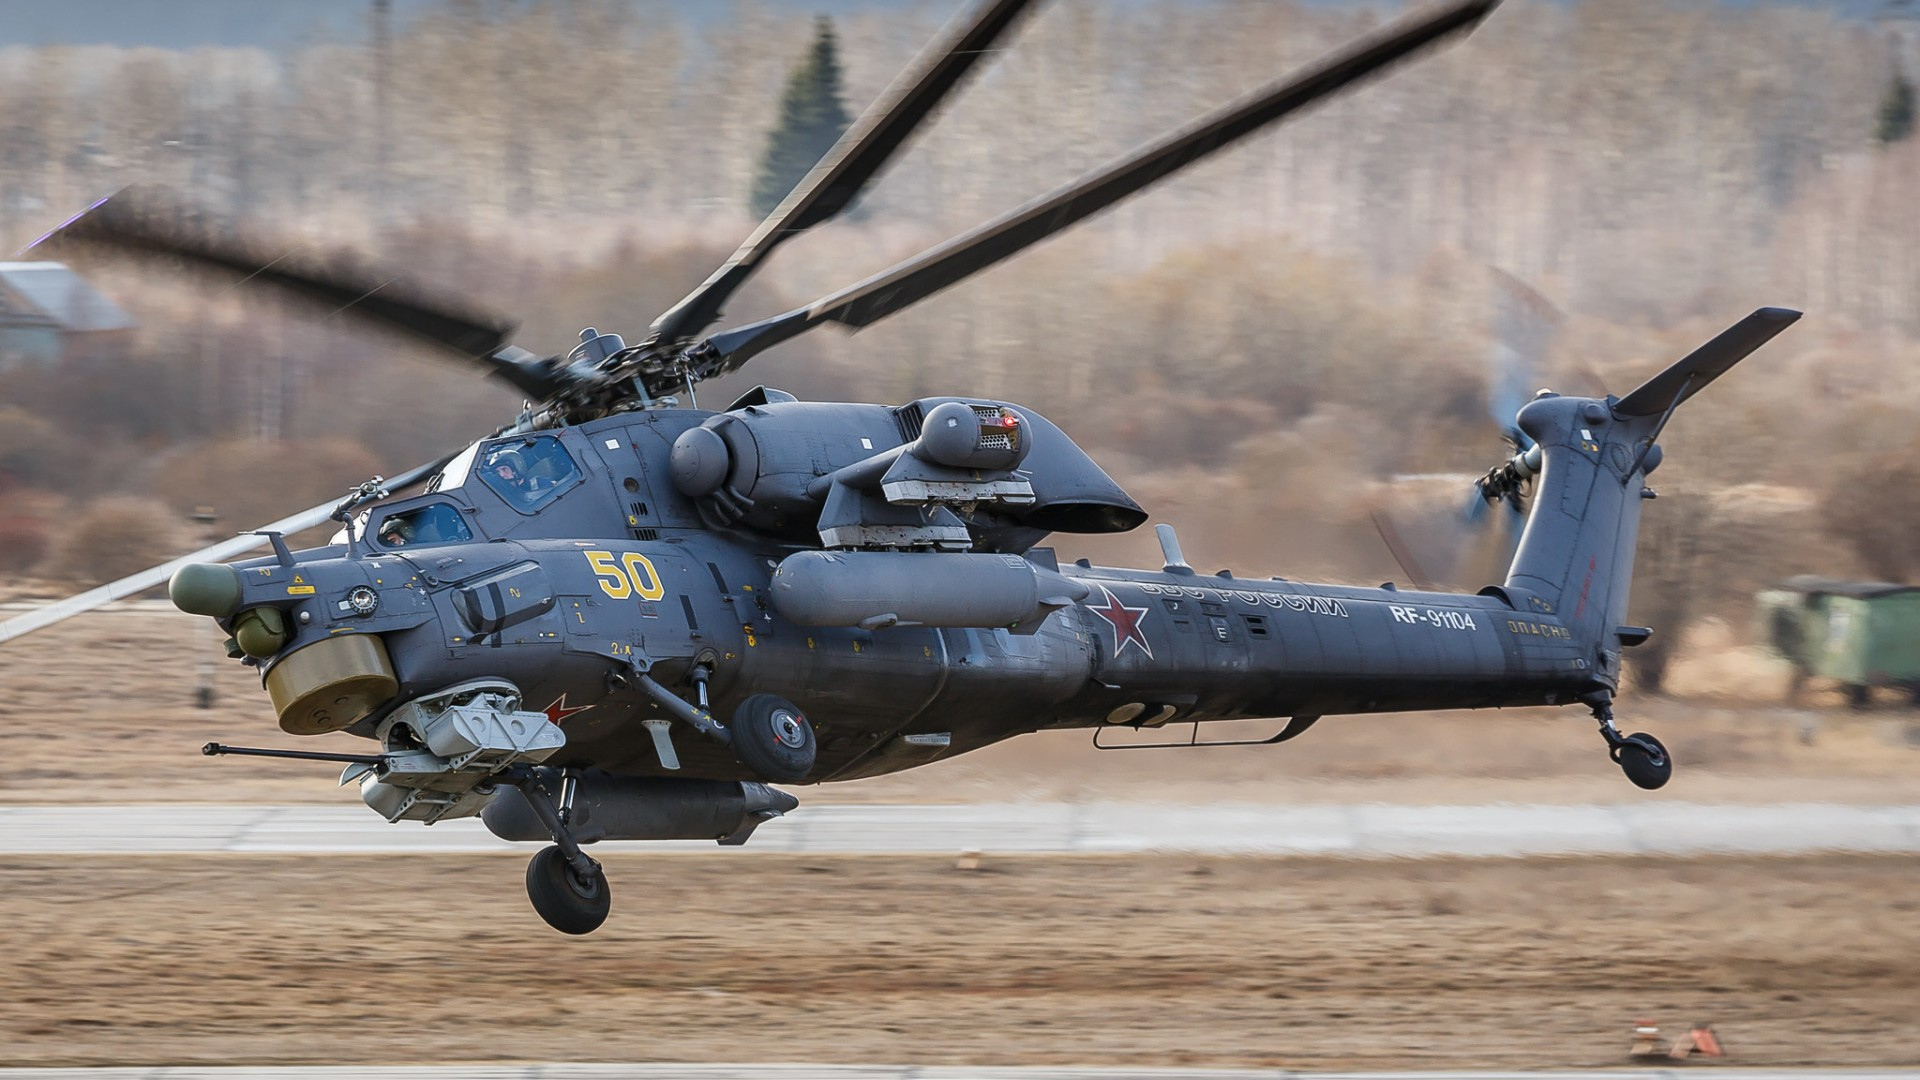 Εκατοντάδες ελικόπτερα θα παραλάβει ο ρωσικός Στρατός μέχρι το 2027 – Δηλώσεις Σοιγκού